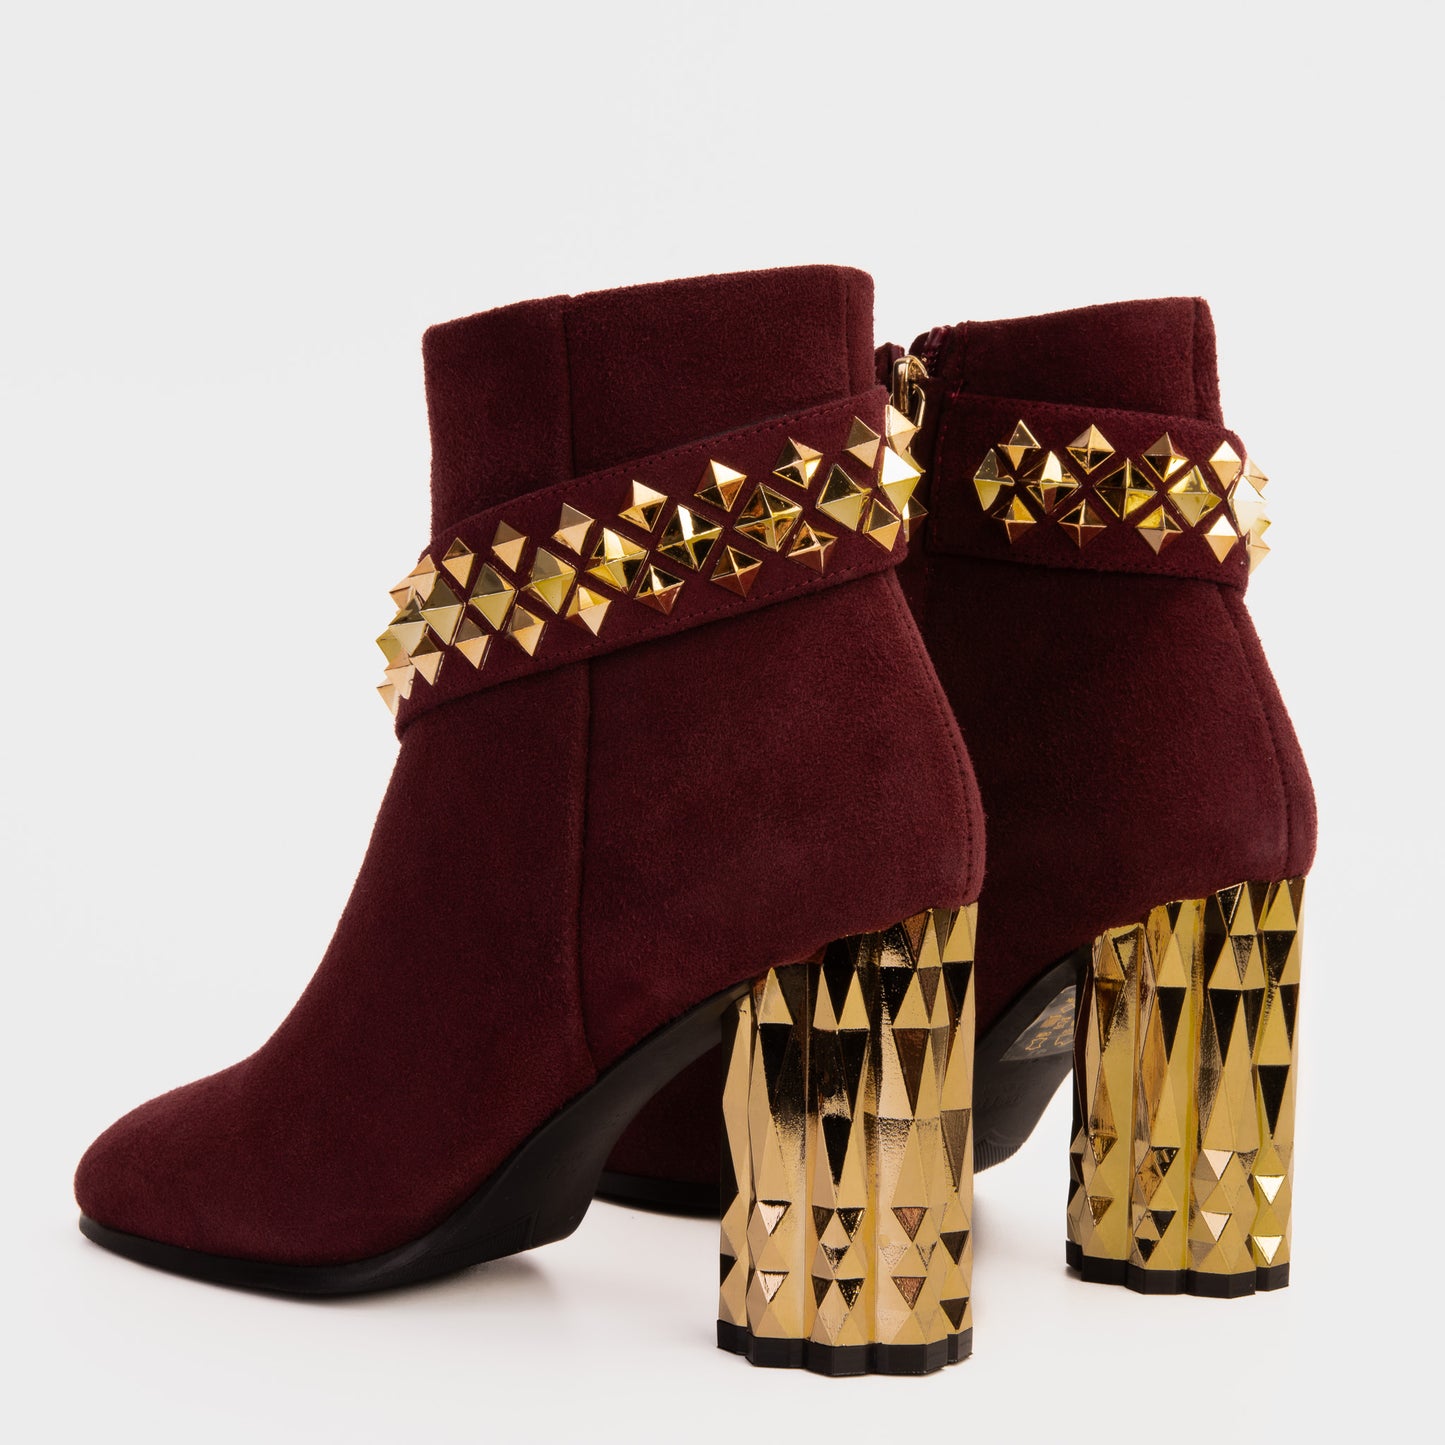 The Metal Burgundy Suede Leather Block Heel Women Boot